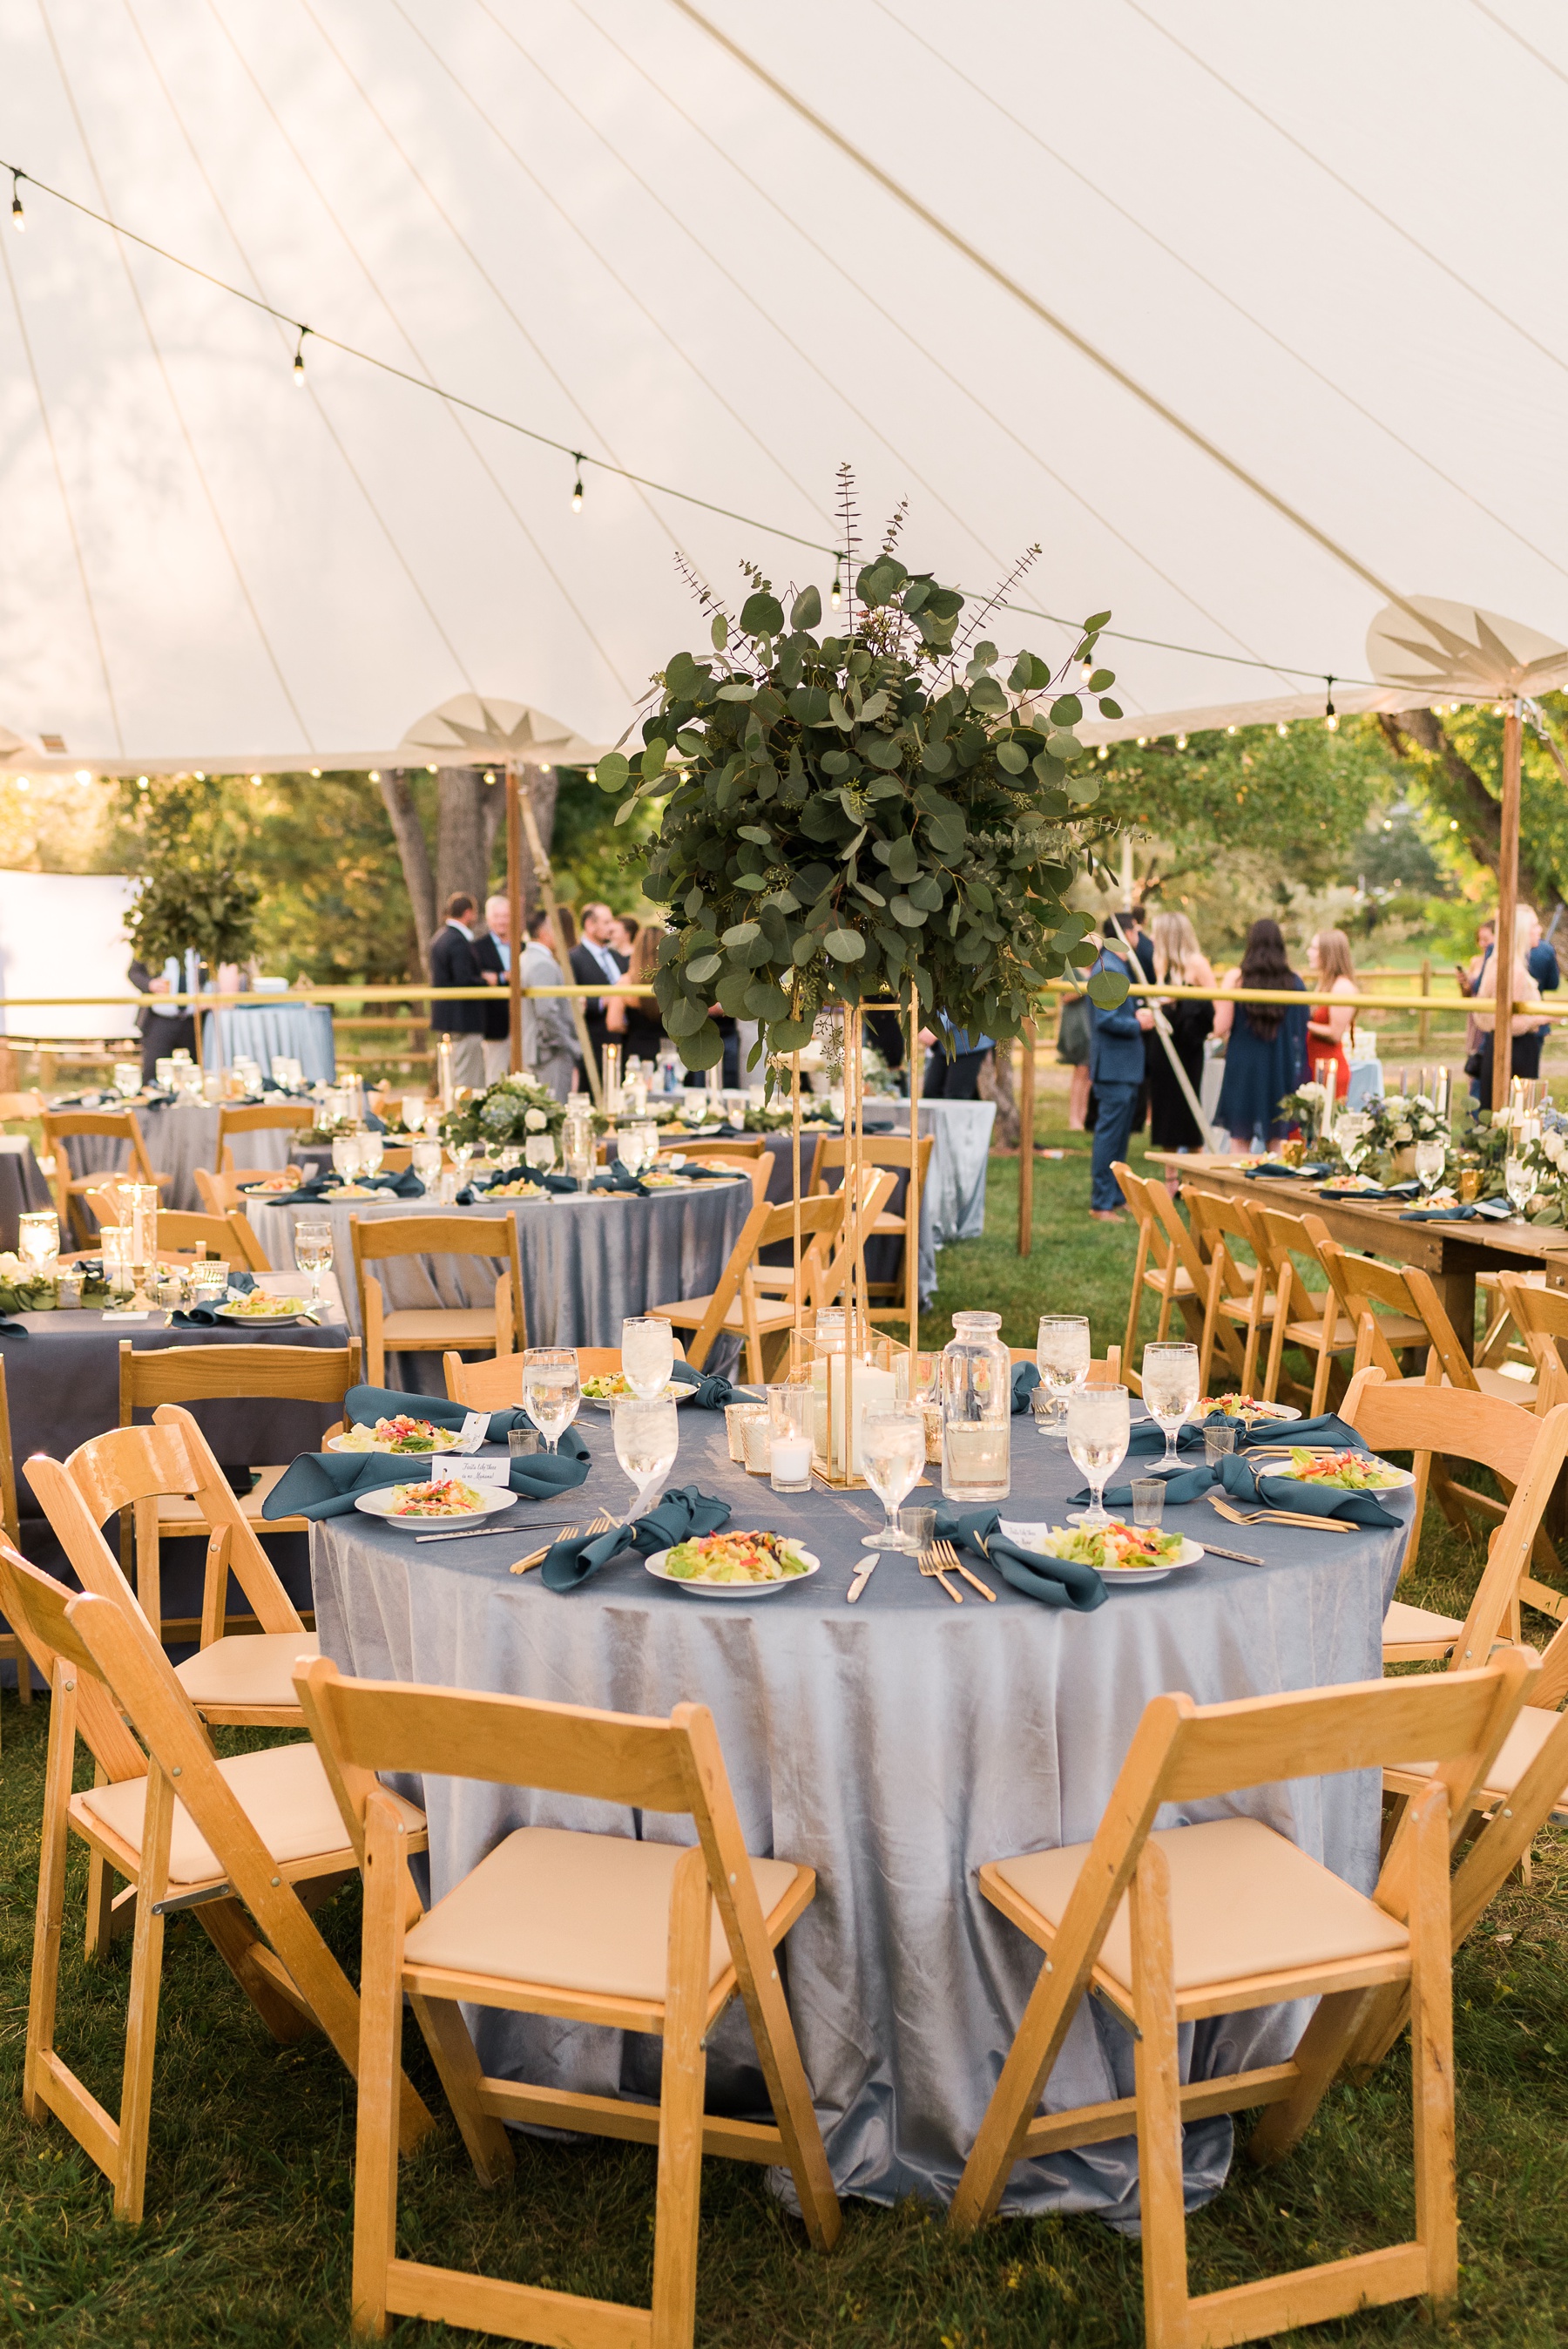 Dusty Blue Wedding Reception Table Decor